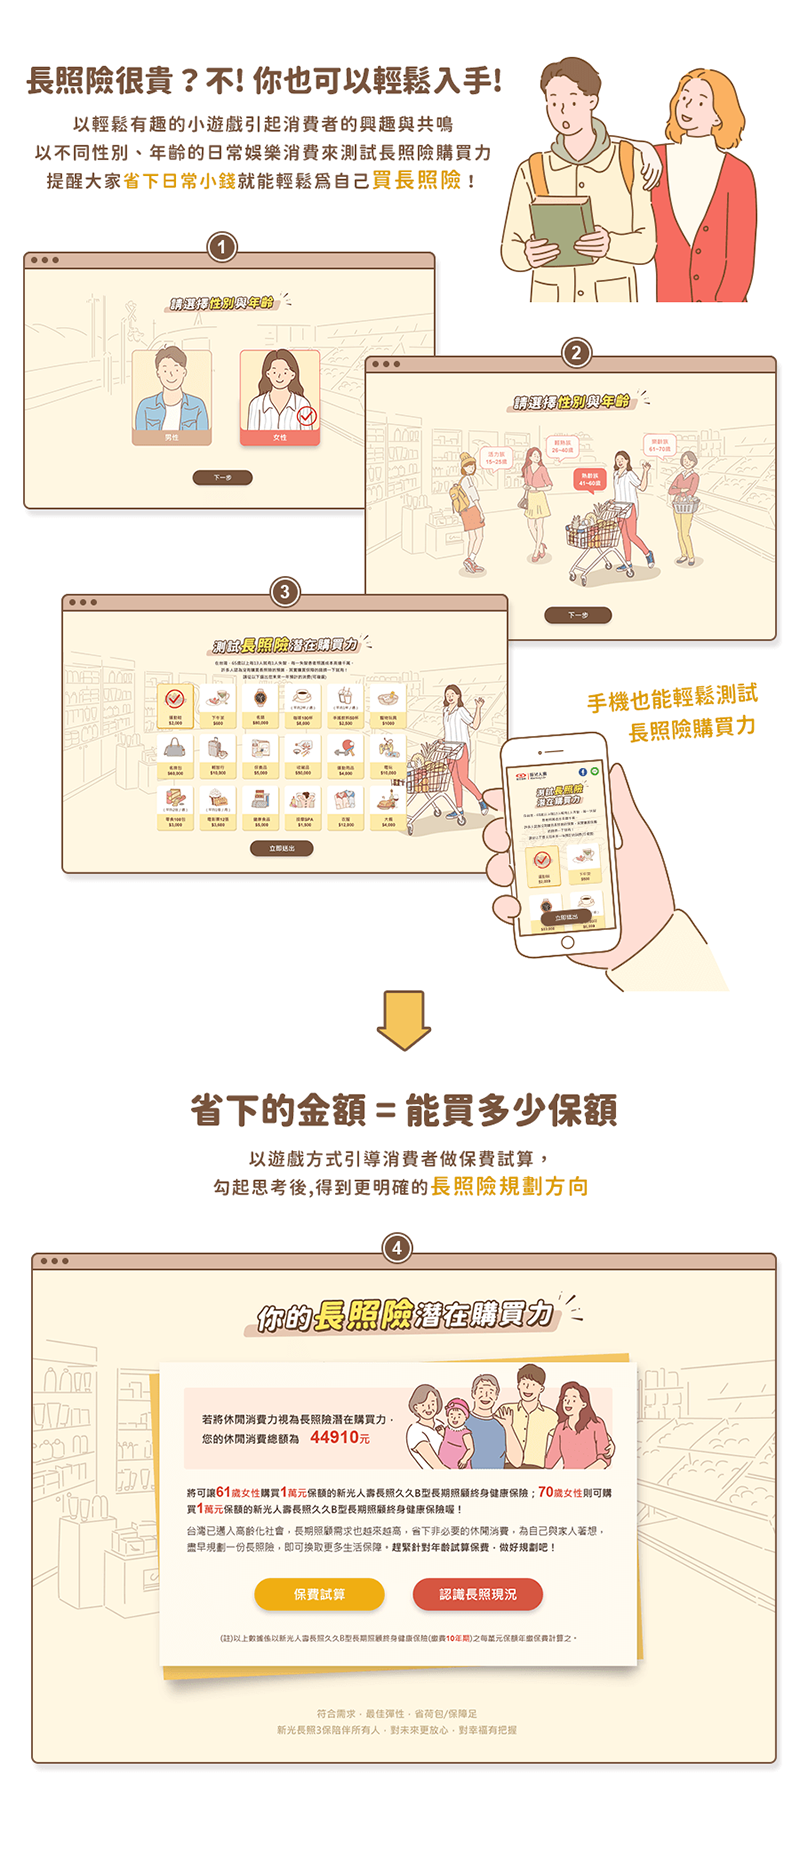 新光人壽 幸福人生購物車 活動網站 網頁設計 網頁互動遊戲